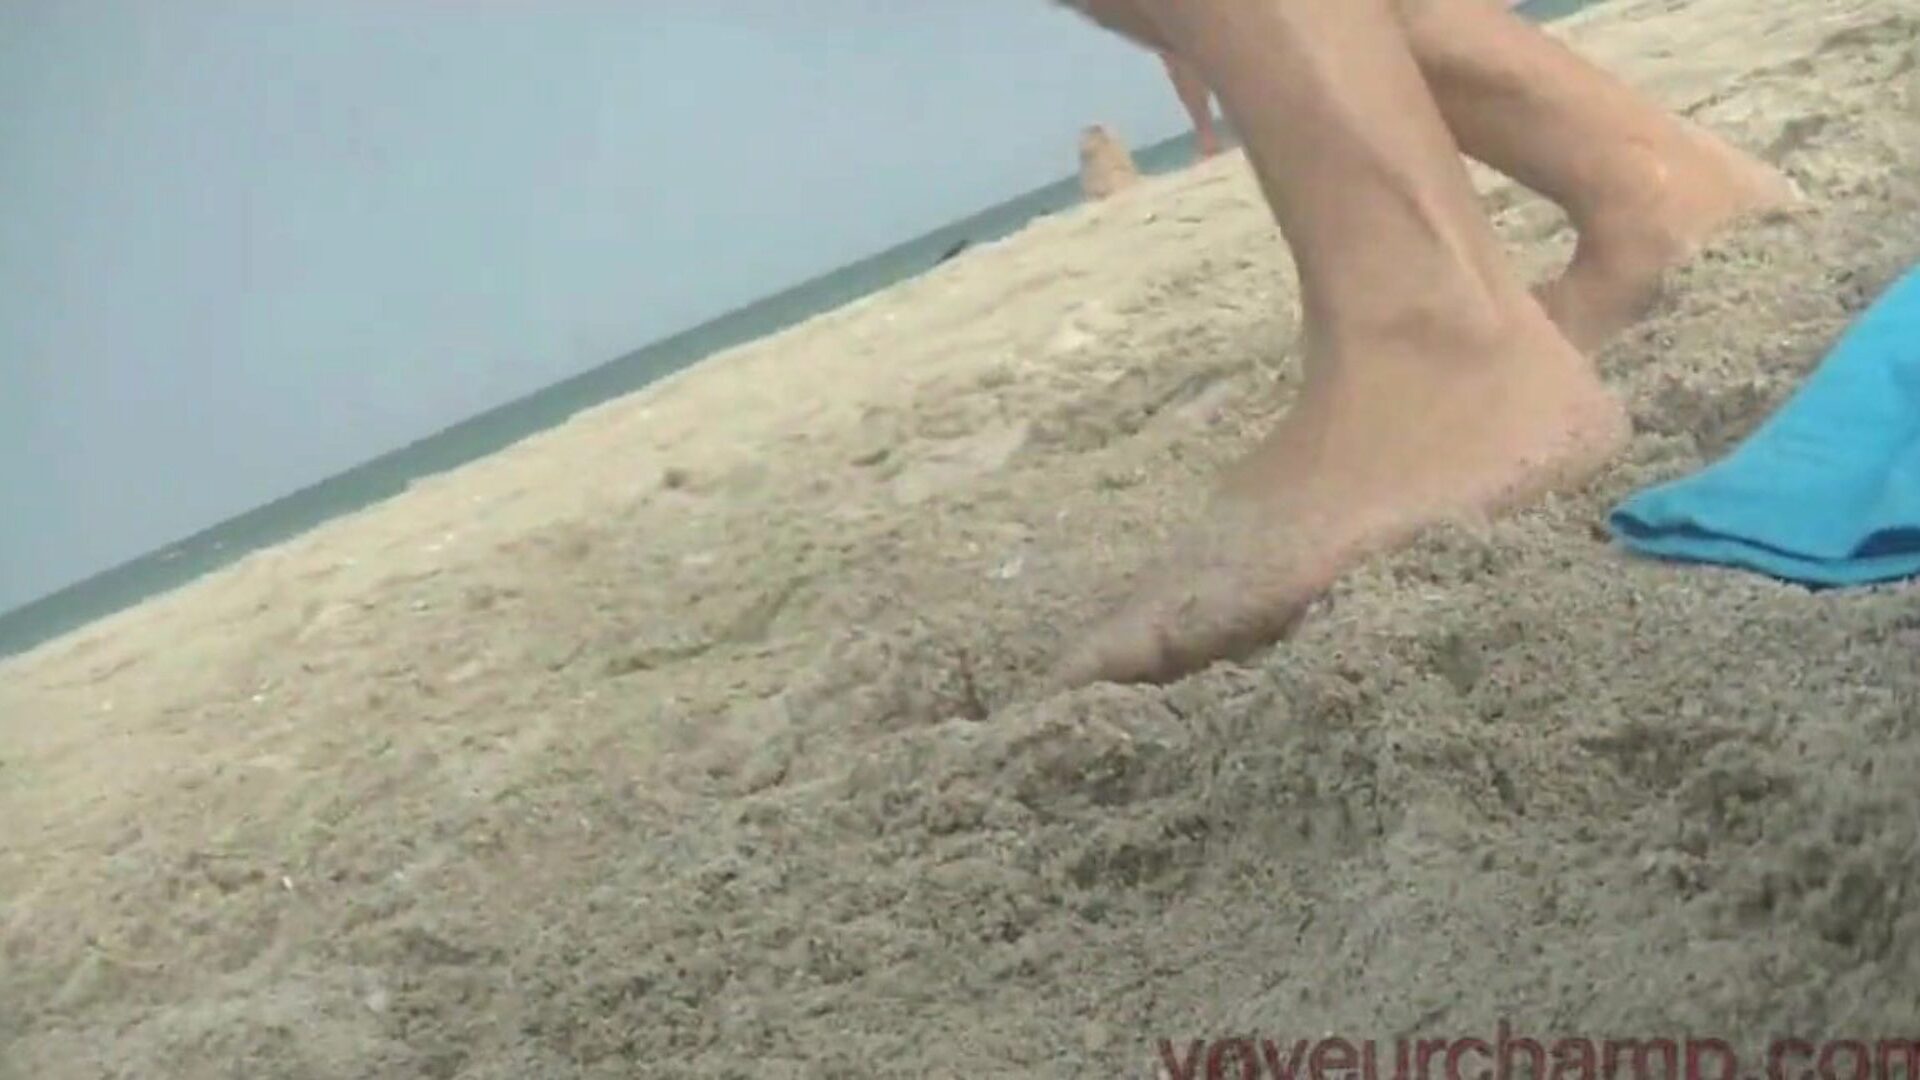 exhibicionistická manželka nahá pláž a veřejné škádlení! přejděte na naše stránky a podívejte se na všechny naše neobřezané klipy